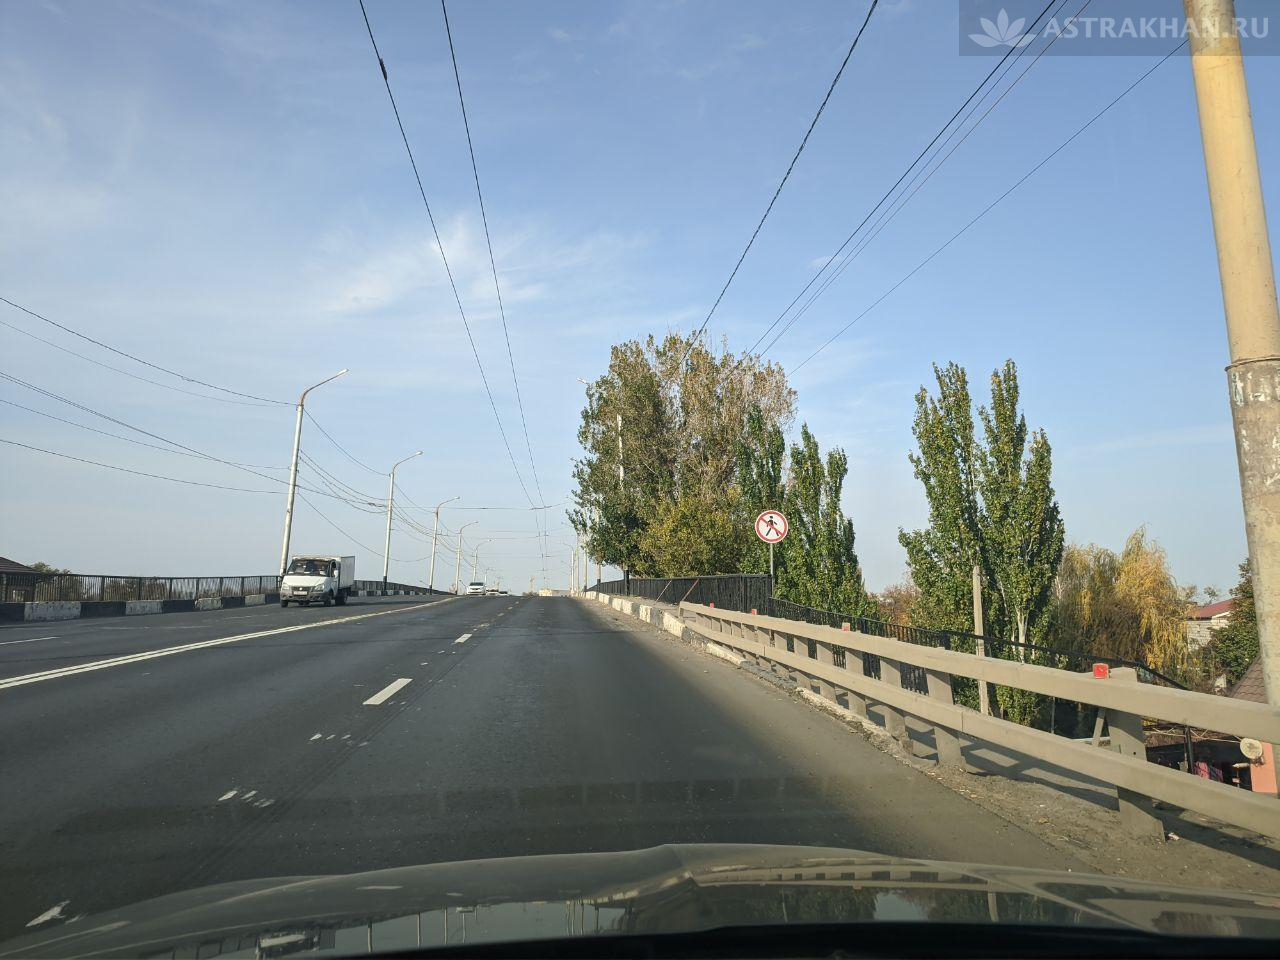 Мост через реку Царев будут срочно ремонтировать